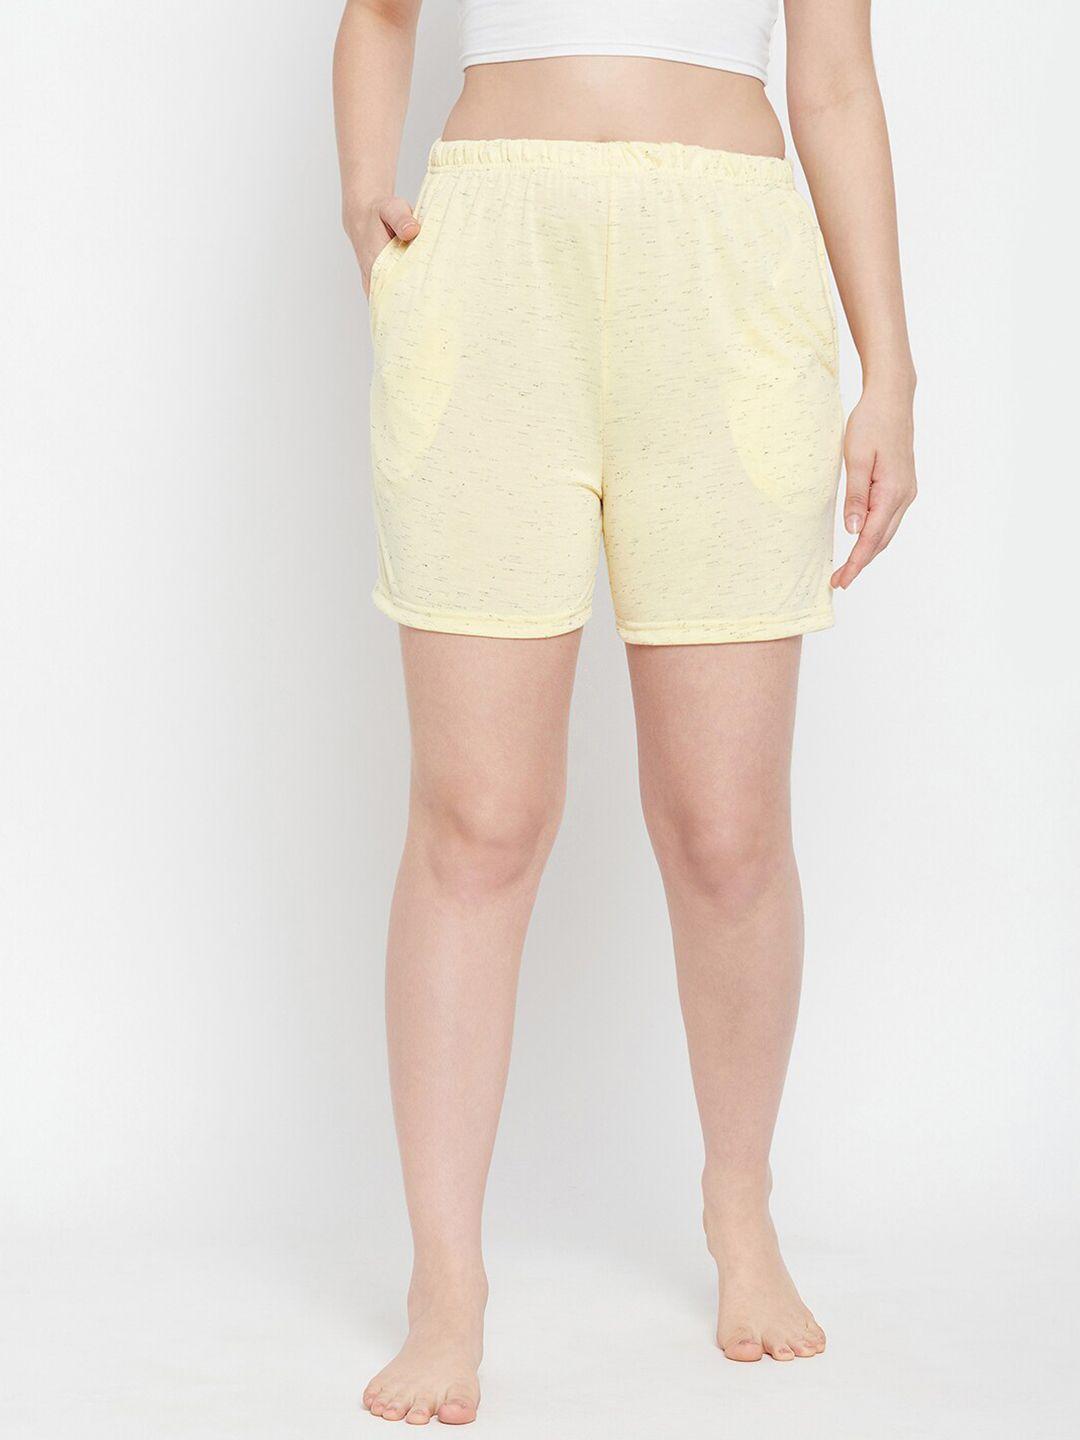 clovia women lounge shorts- lb0145d023xl-yellow